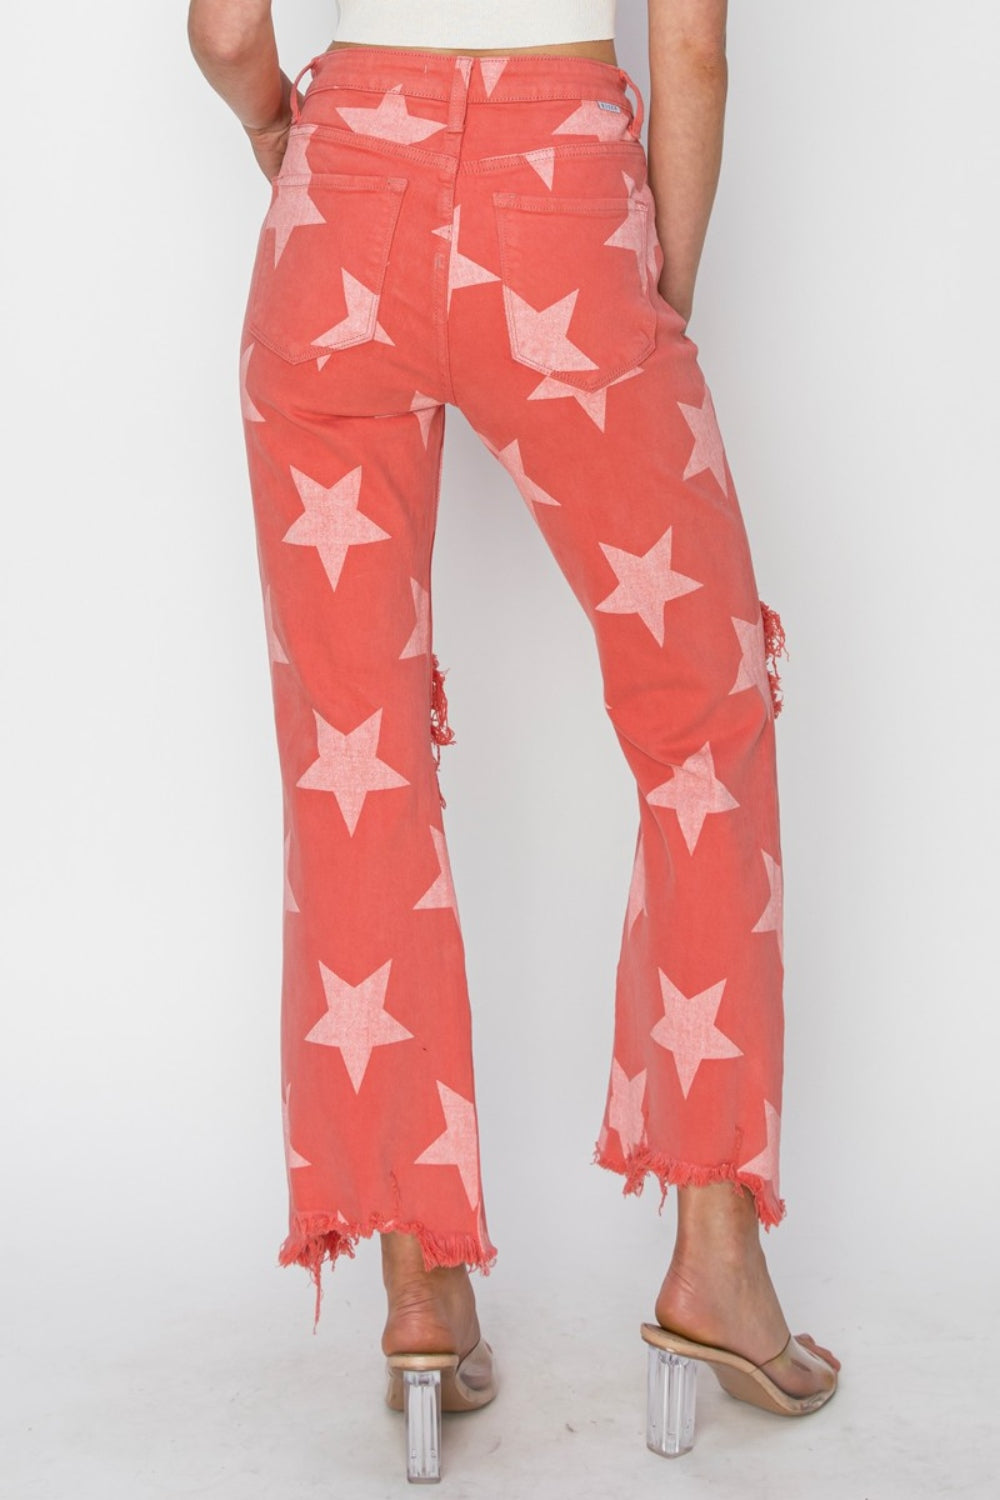 Patriotic Distressed Raw Hem Star Pattern Jeans